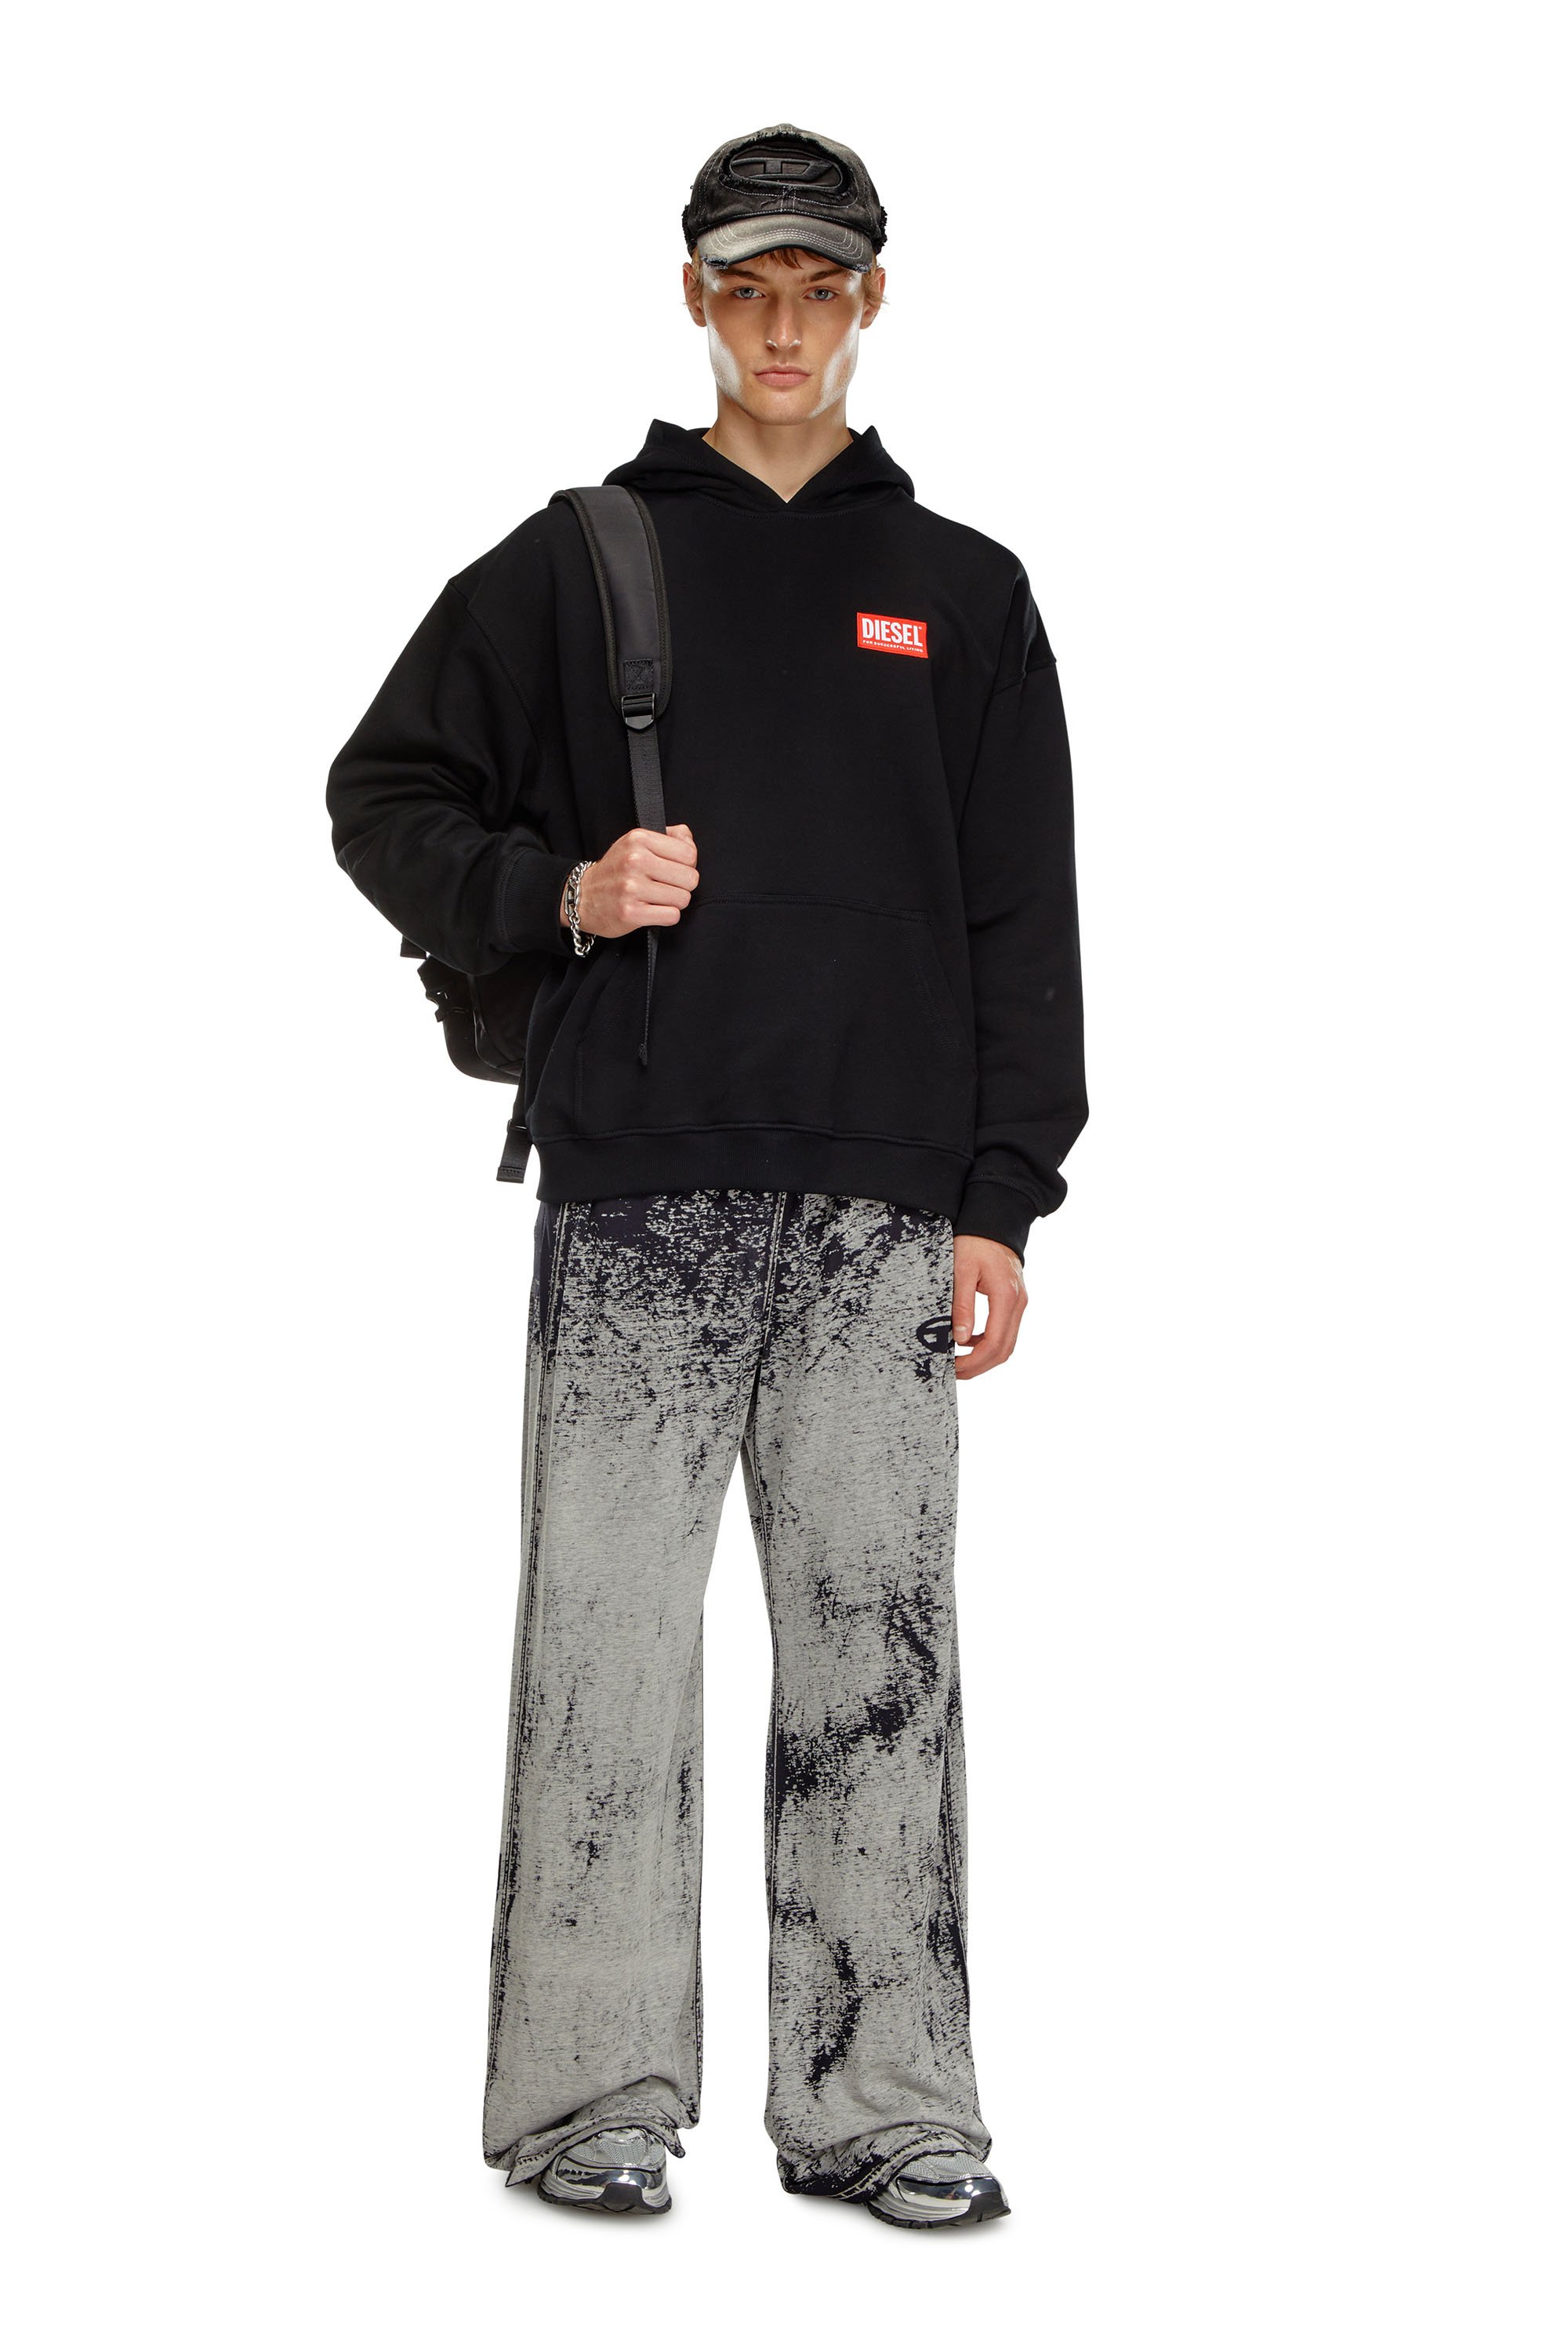 Diesel - S-BOXT-HOOD-LAB, Homme Sweat-shirt à capuche avec étiquette Diesel in Noir - Image 2